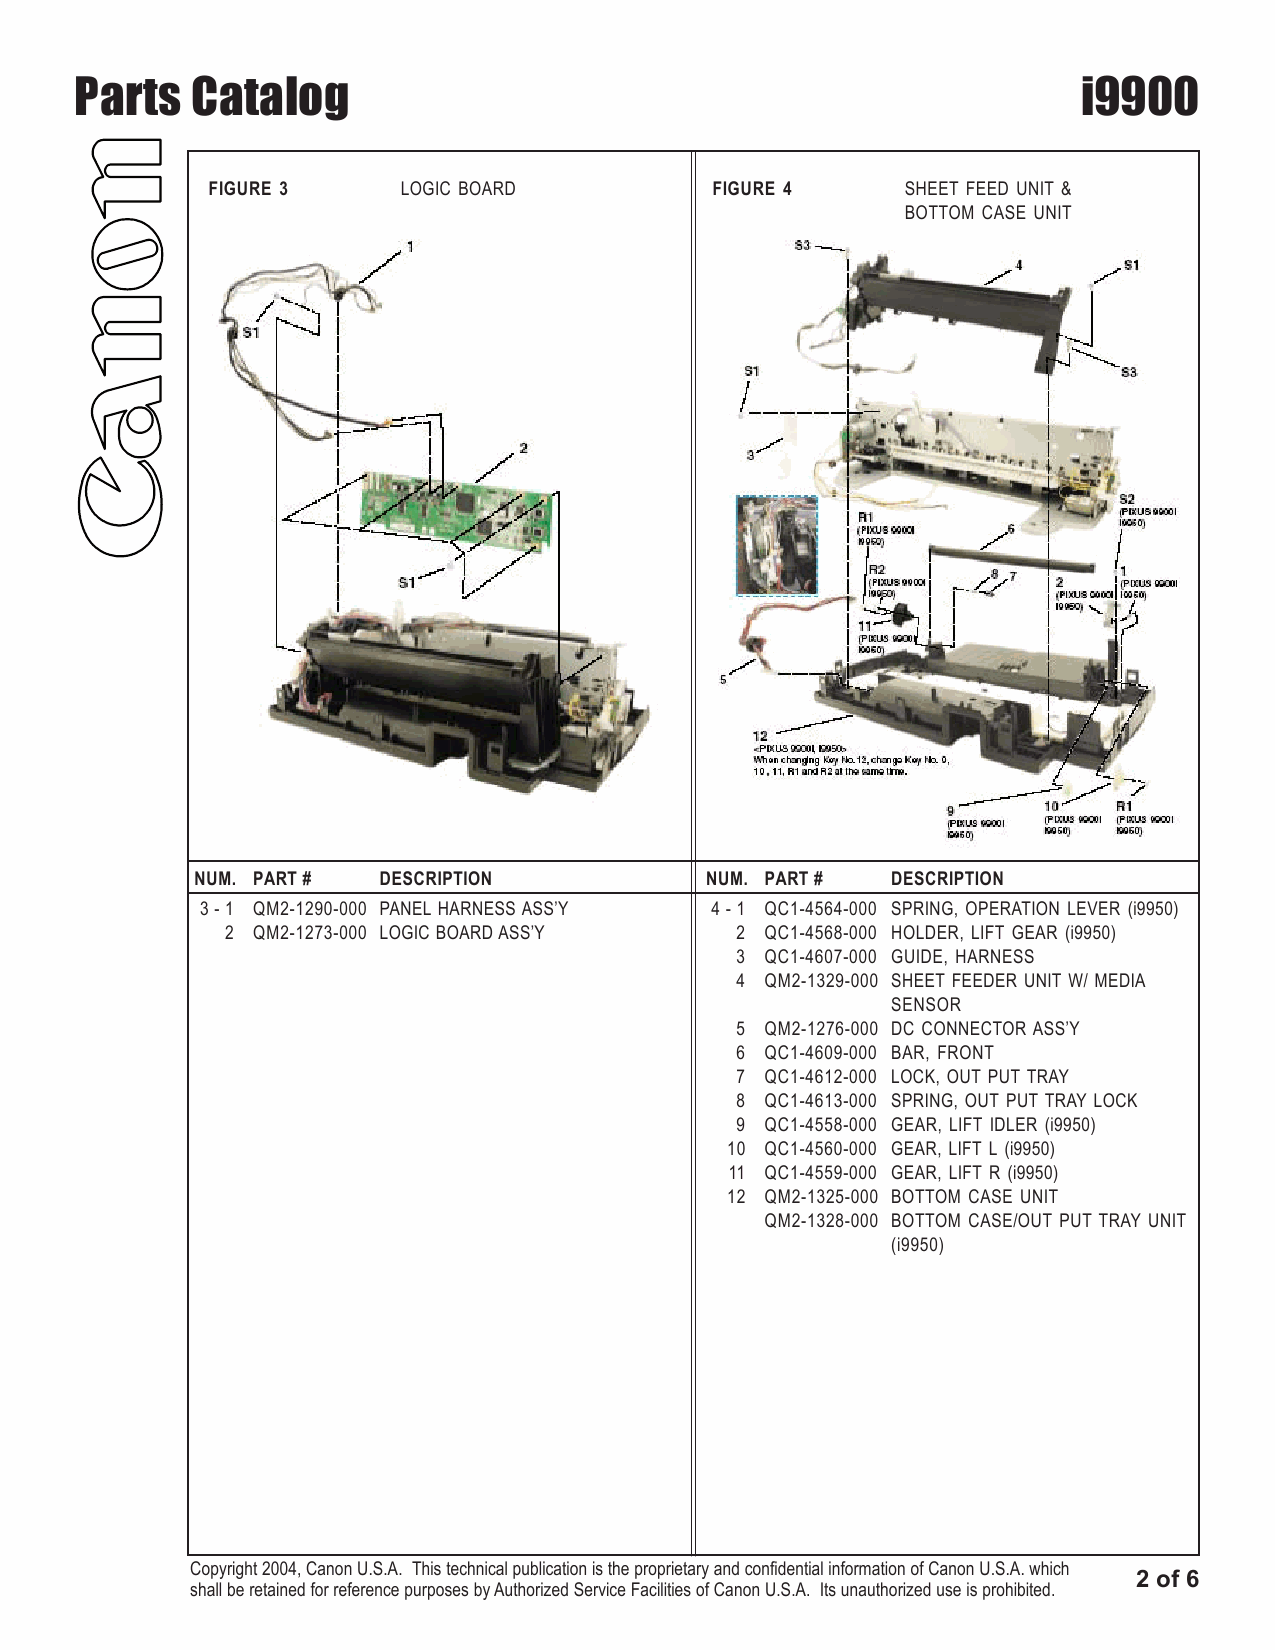 Canon PIXUS i9900 i9950 Parts Catalog Manual-3